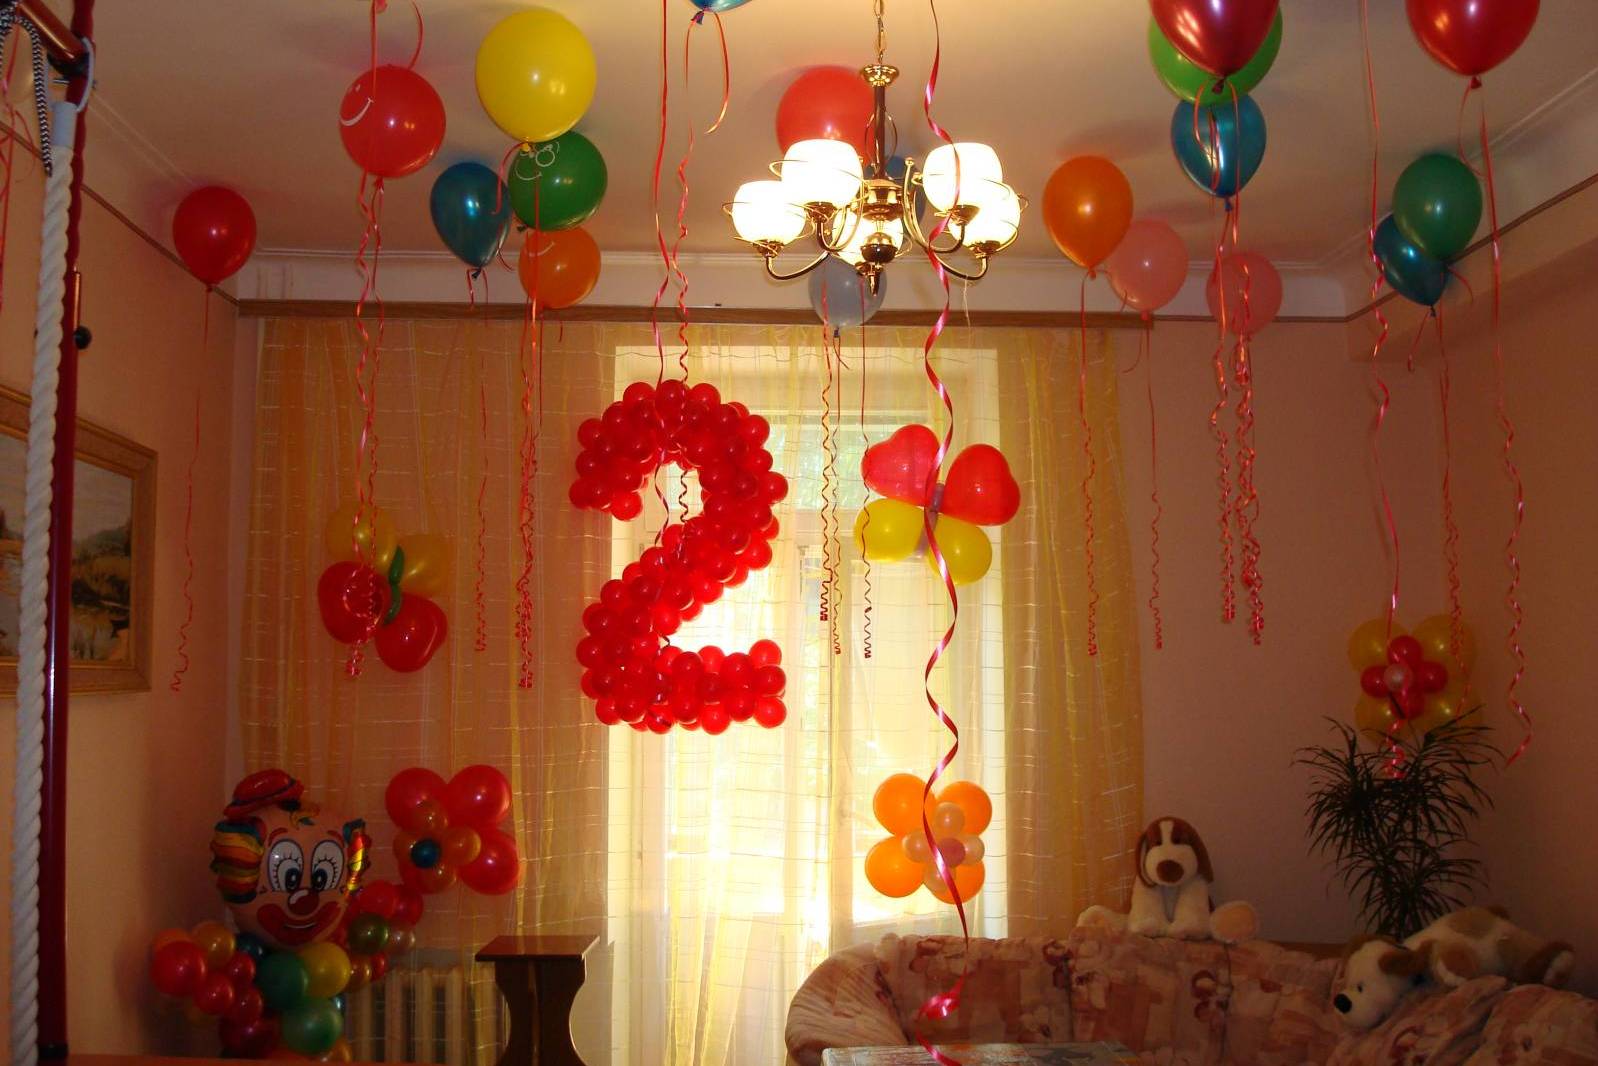 Как украсить комнату на день рождения взрослых: подруги, мамы, бабушки, мужа, девушки?